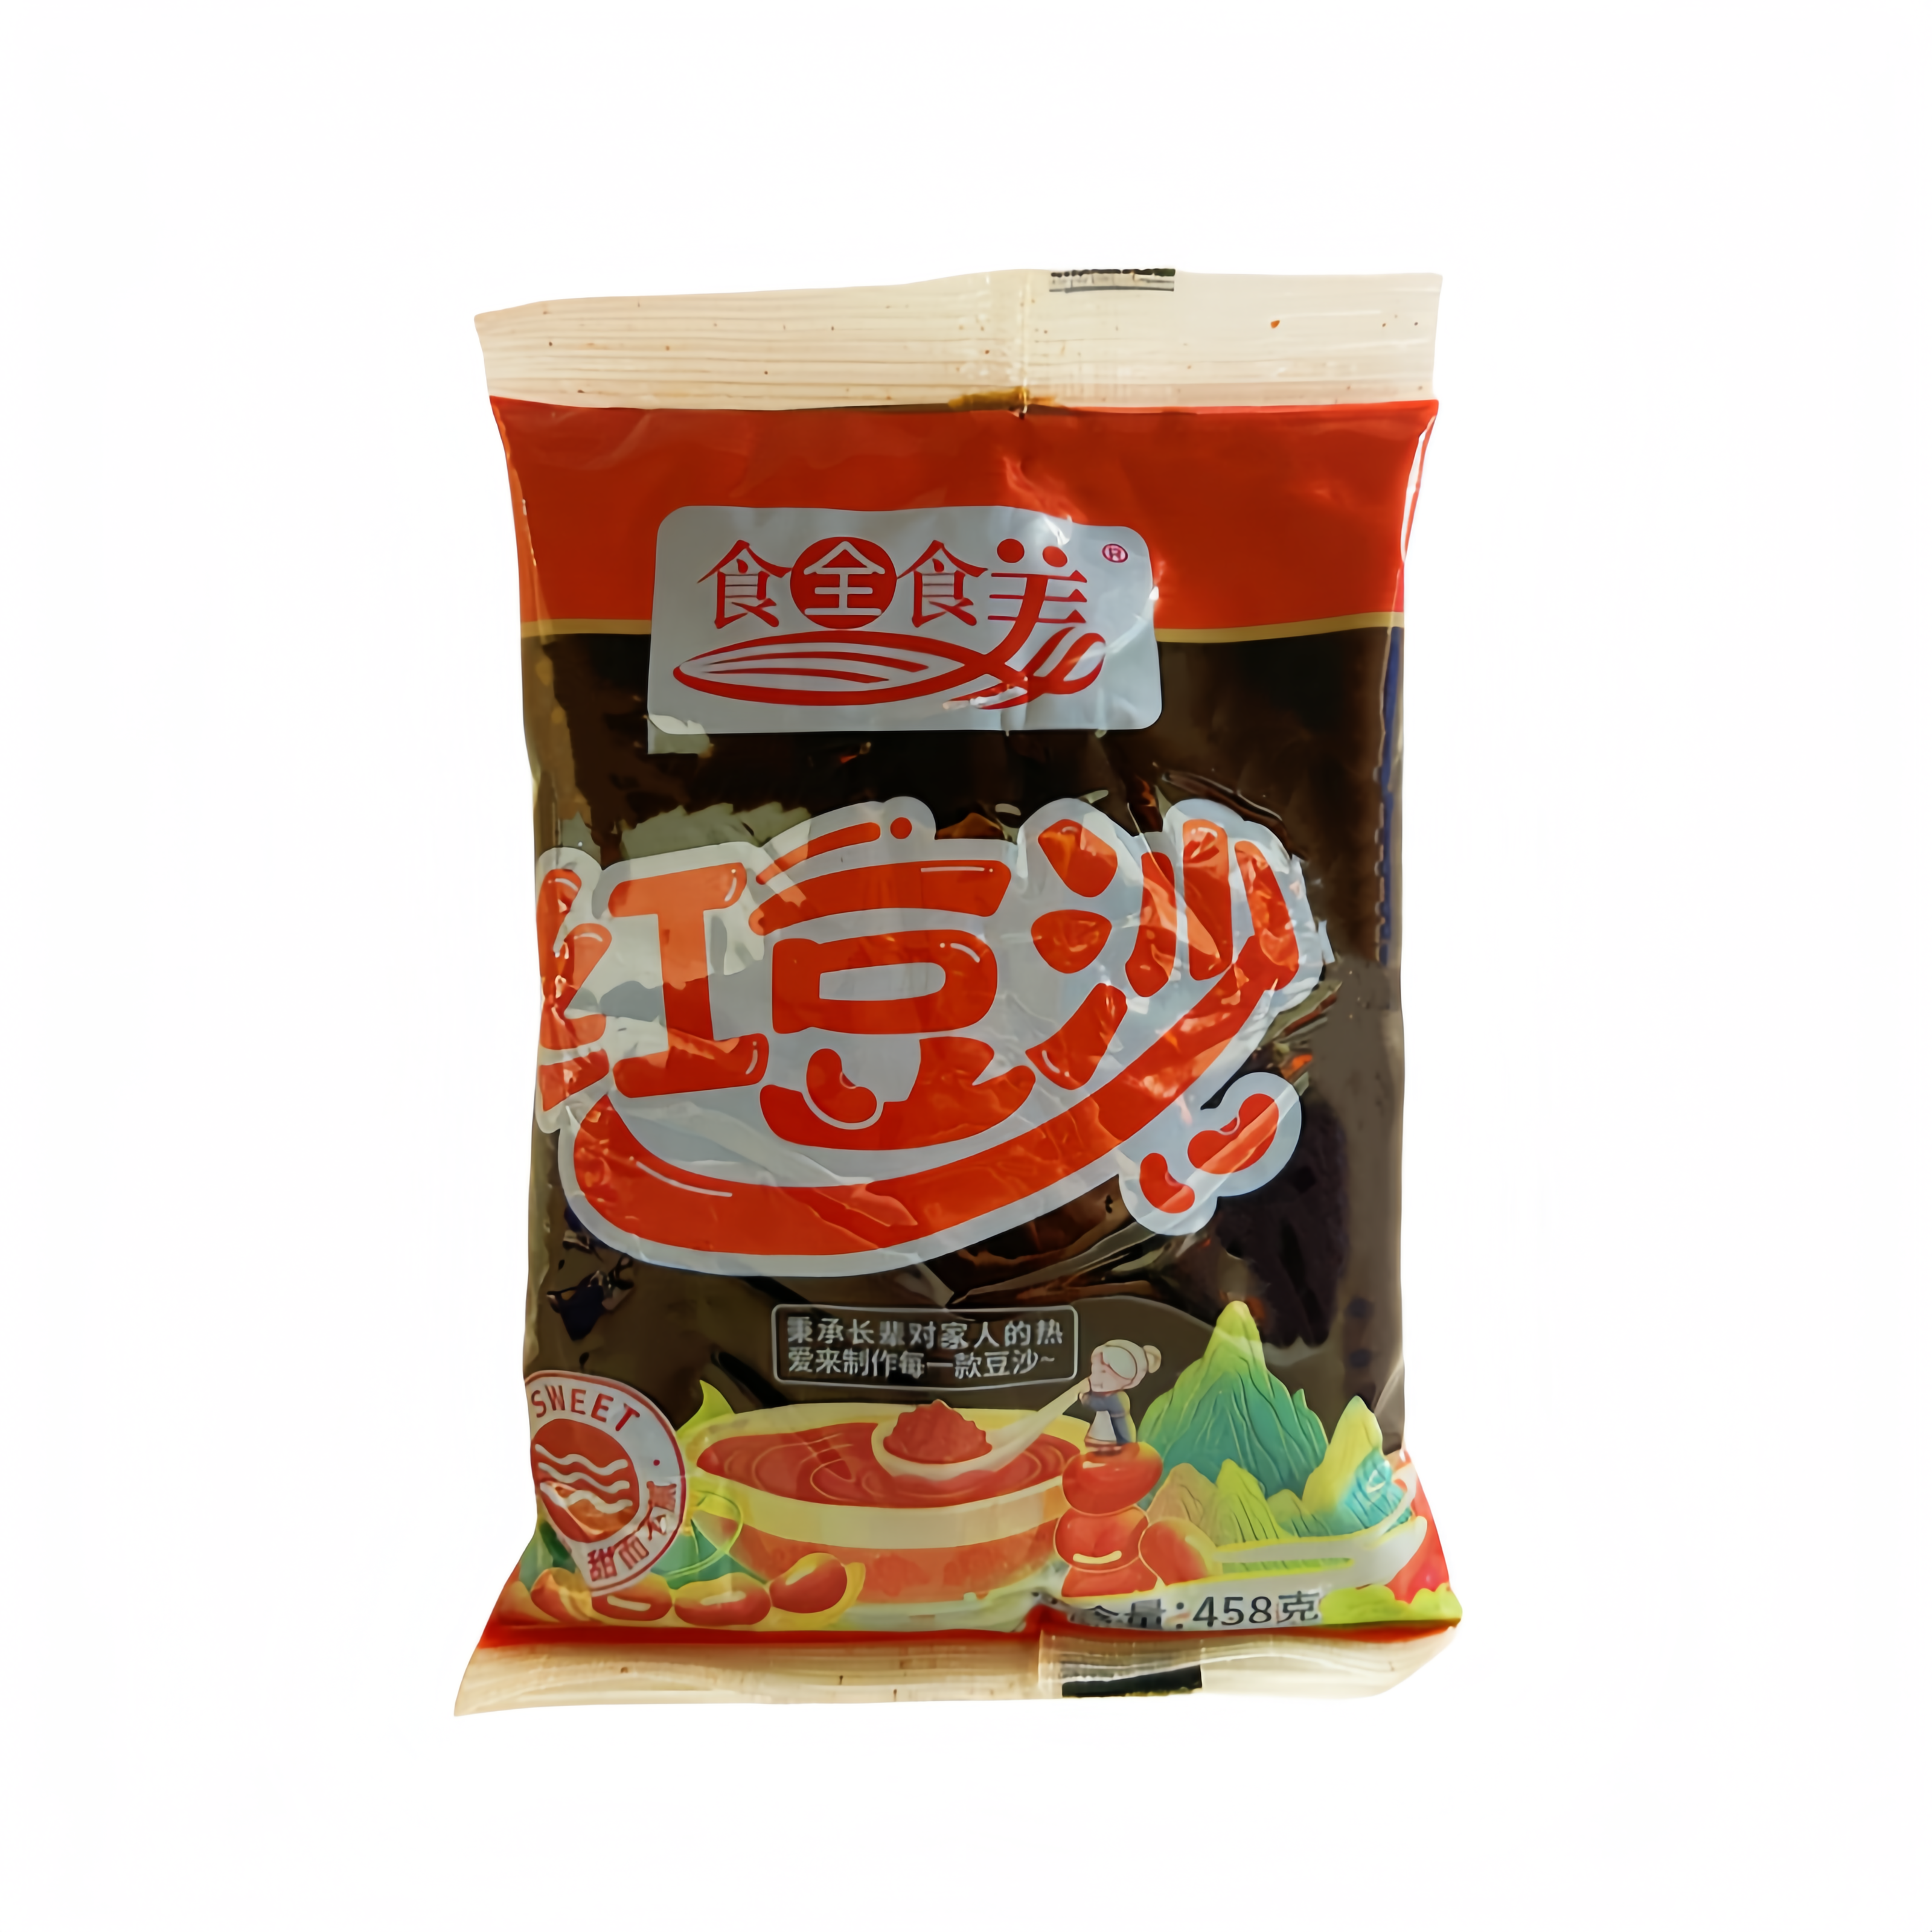 原味红豆沙 458g 食全食美 中国